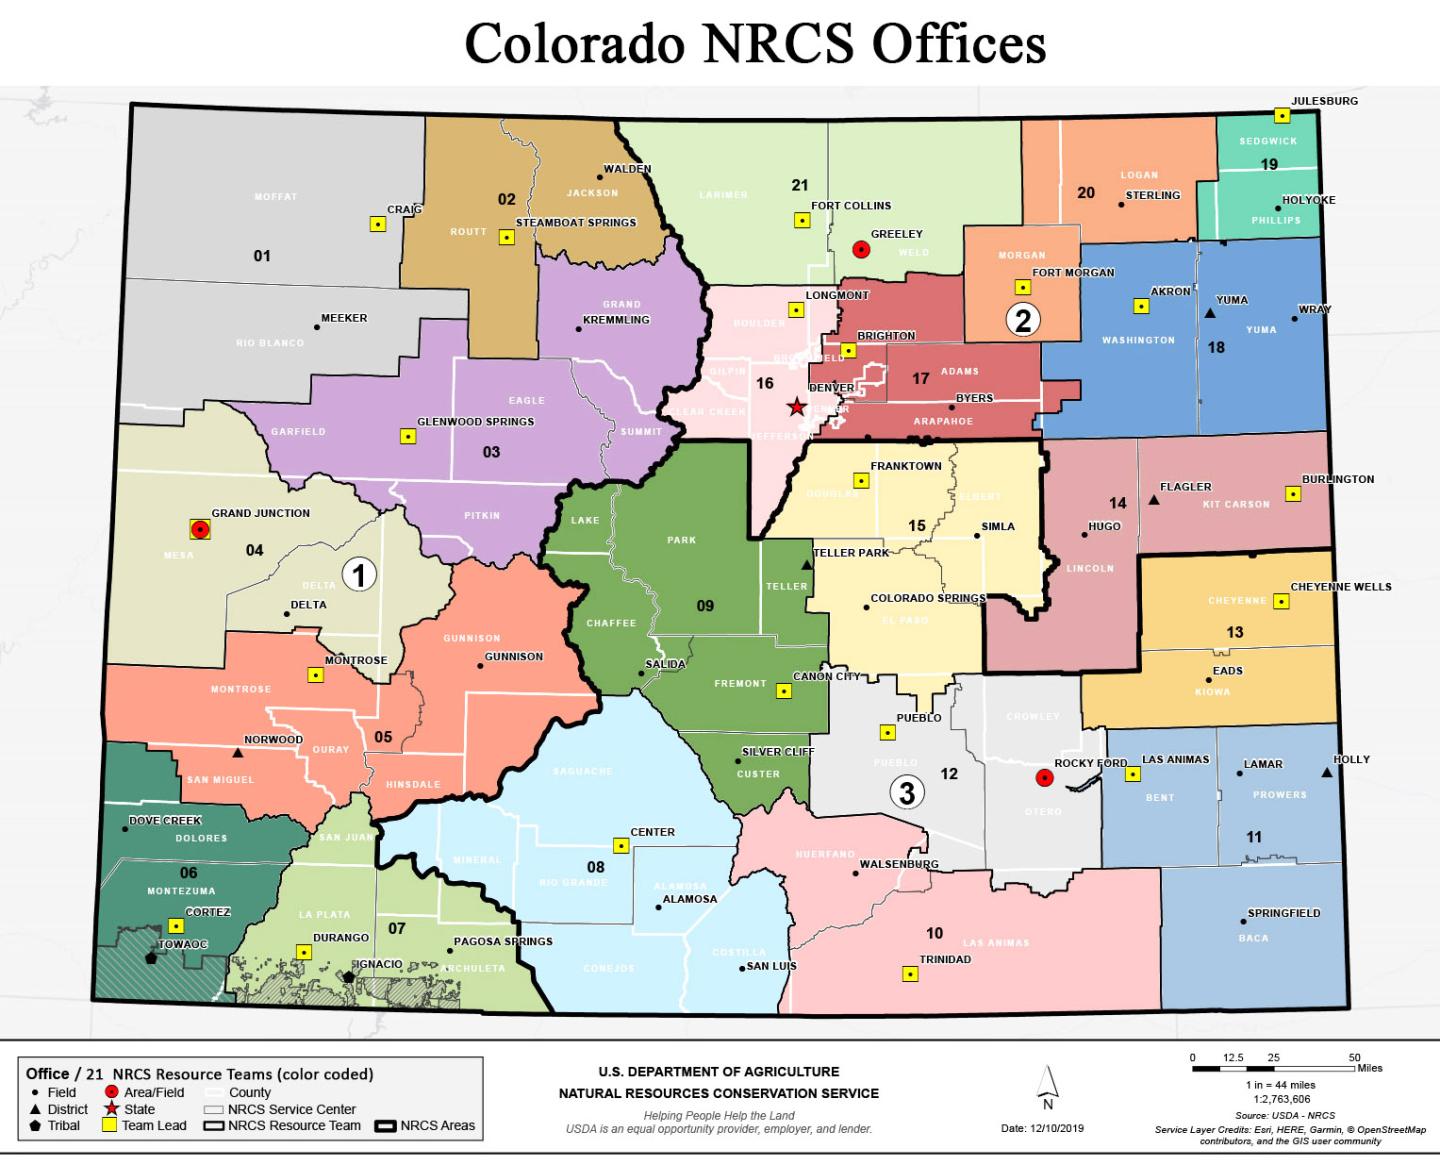 Colorado NRCS offices and resources teams